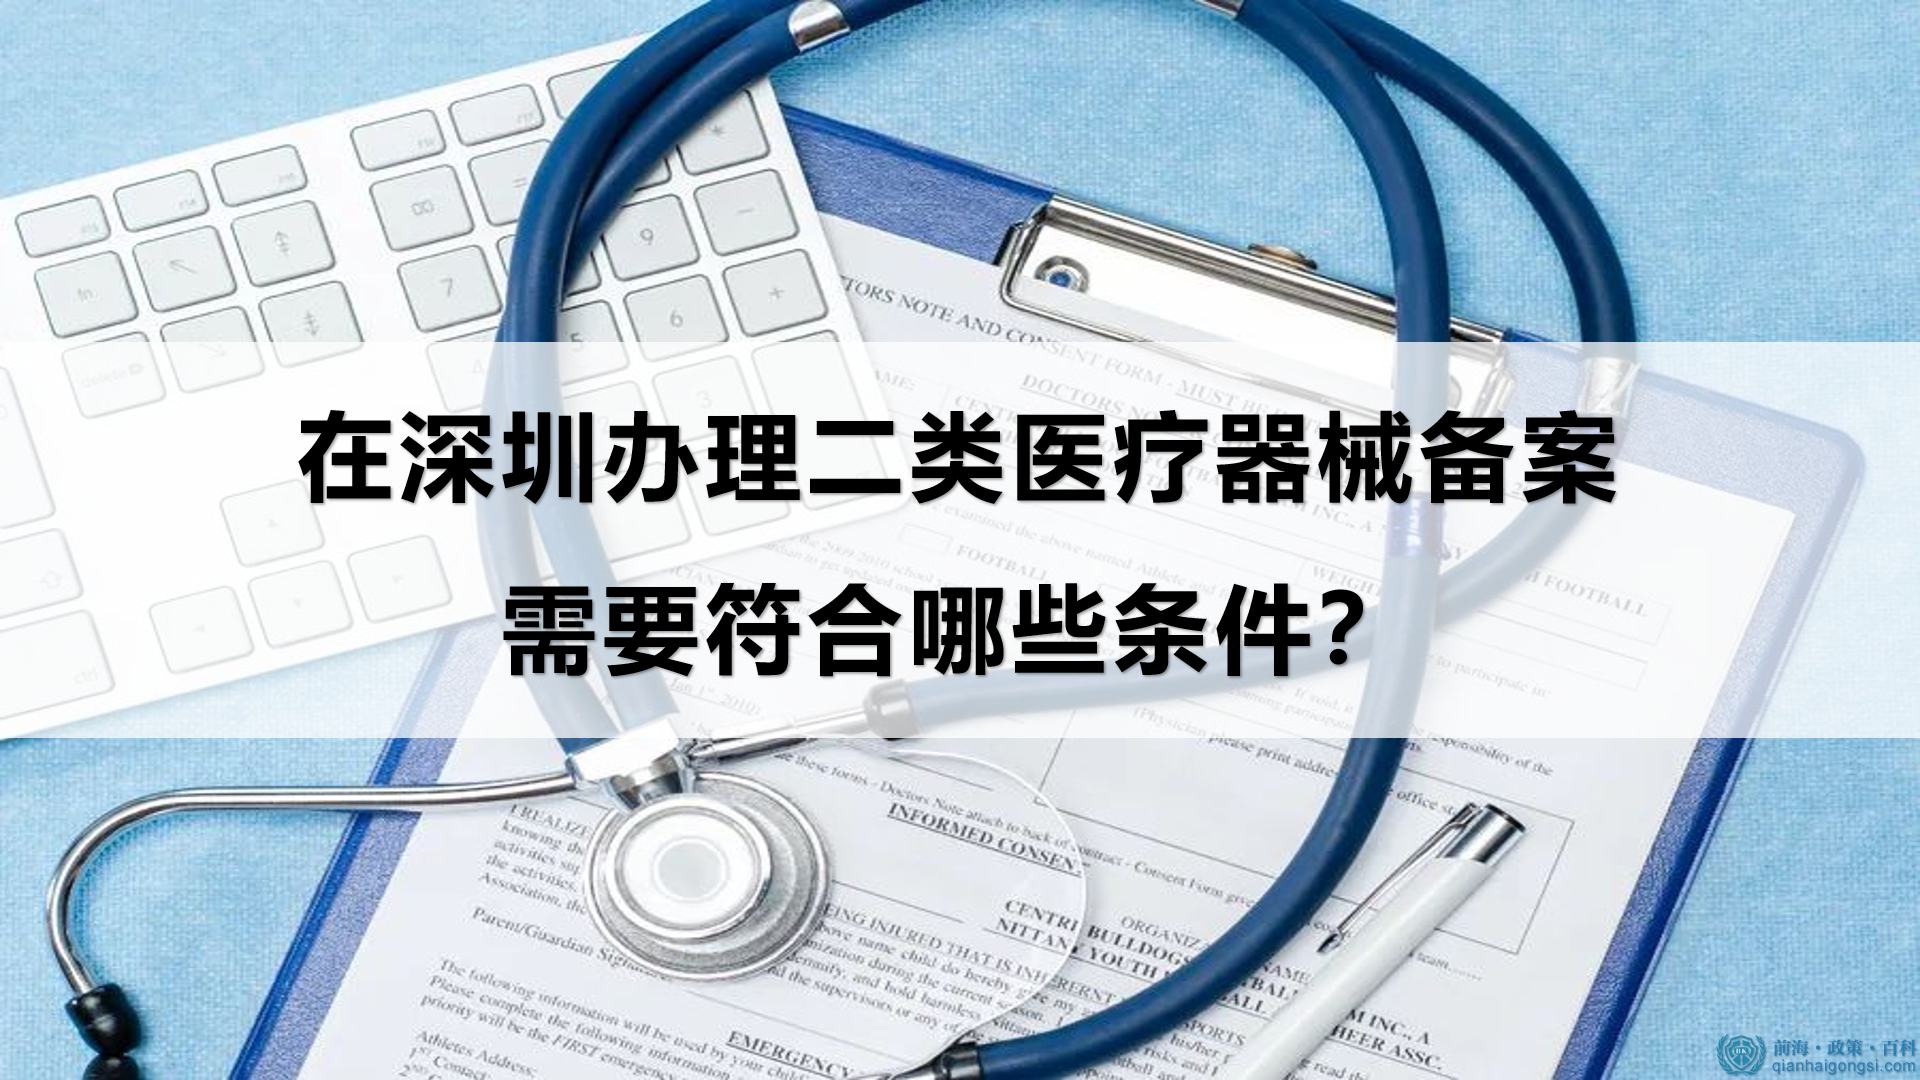 在深圳办理二类医疗器械备案需要符合哪些条件？ 